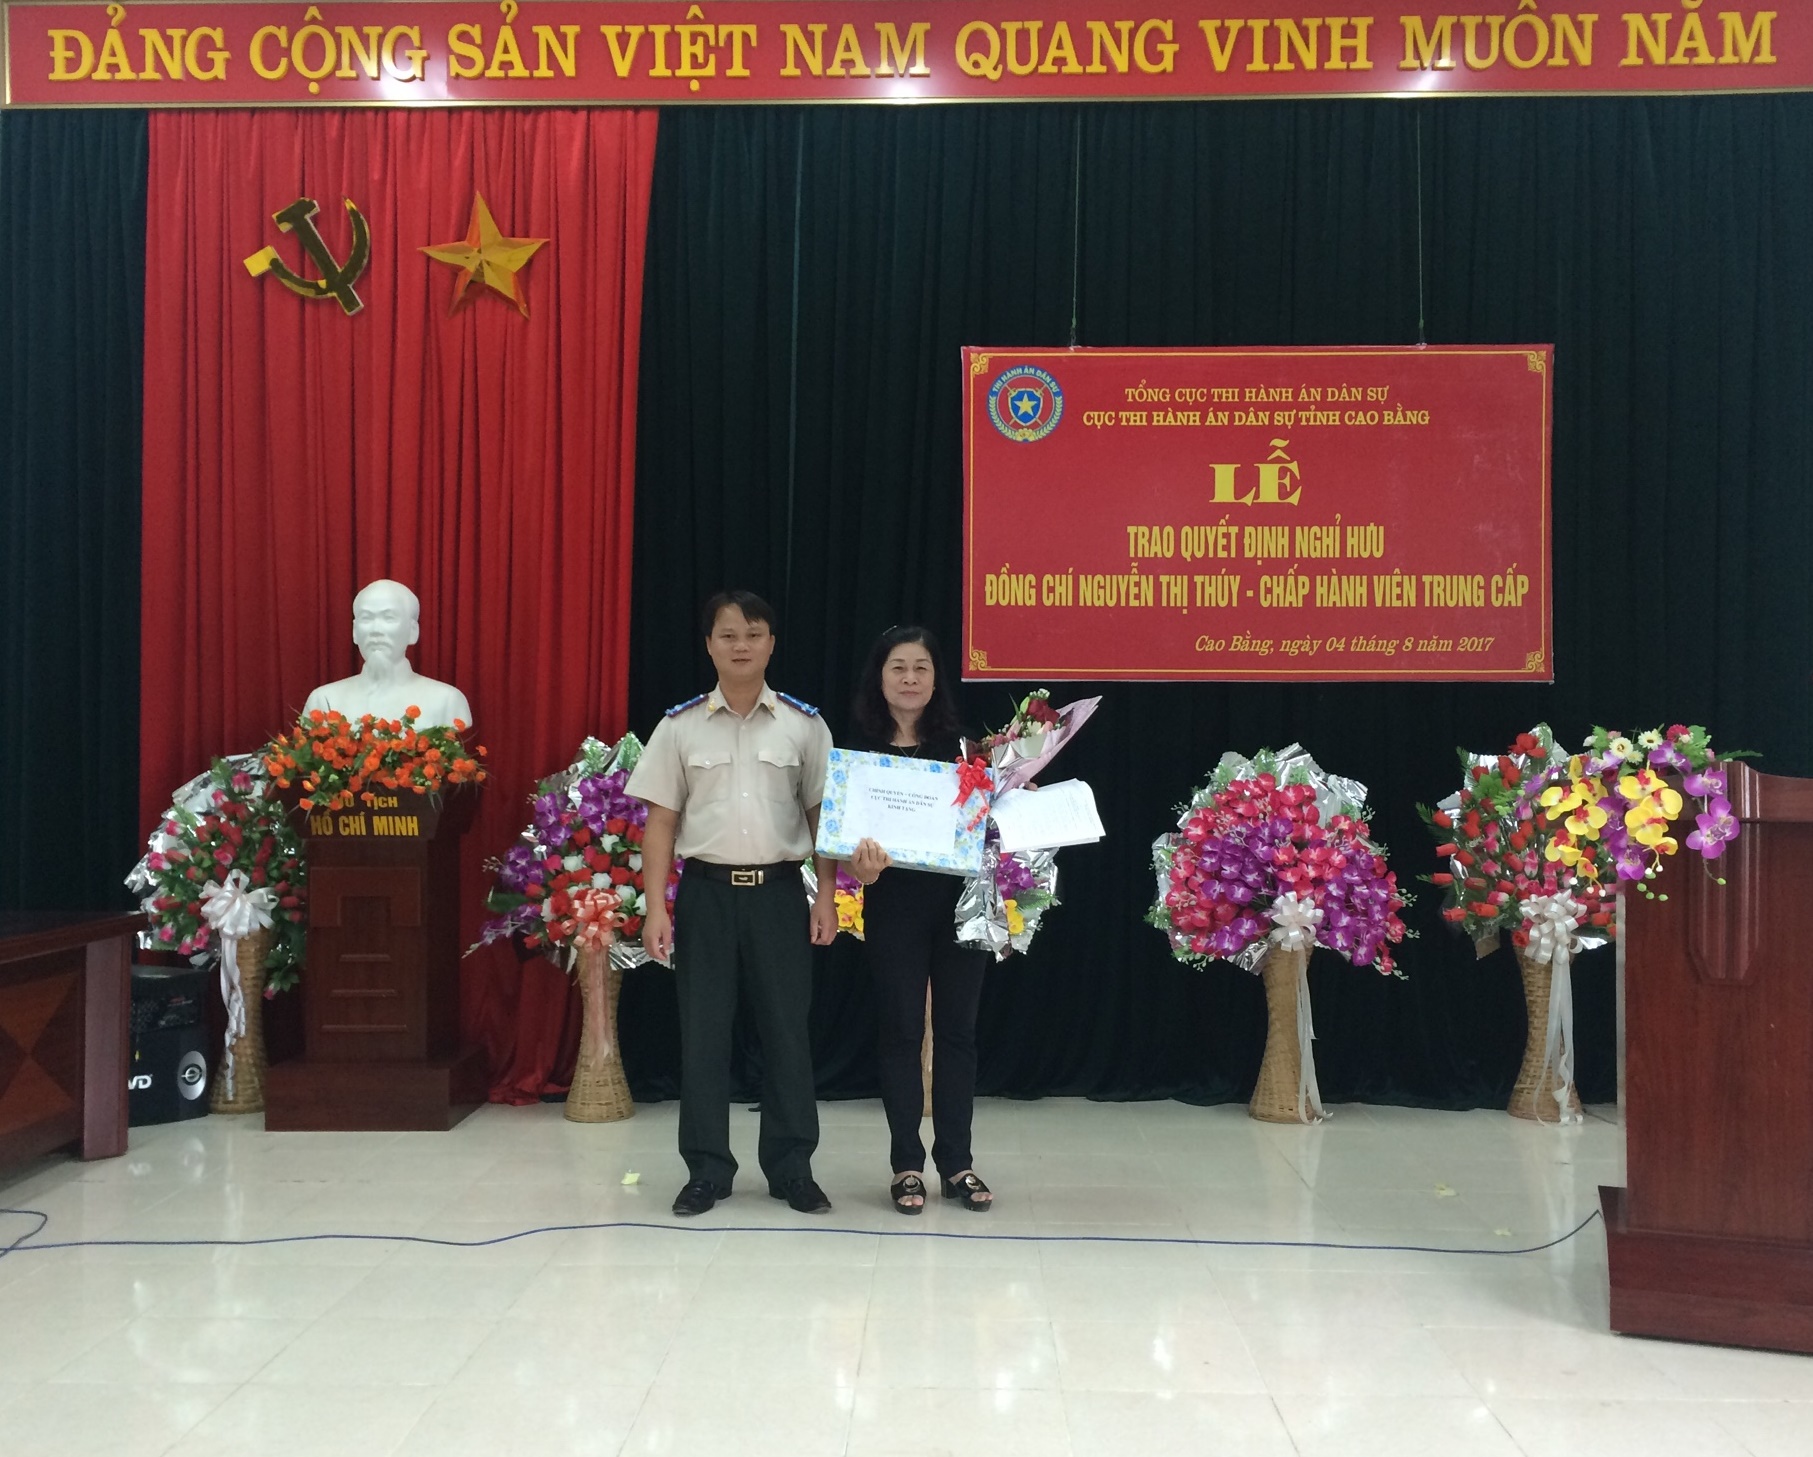 Lễ trao Quyết định nghỉ hưu đồng chí Nguyễn Thị Thúy - Chấp hành viên trung cấp Cục THADS